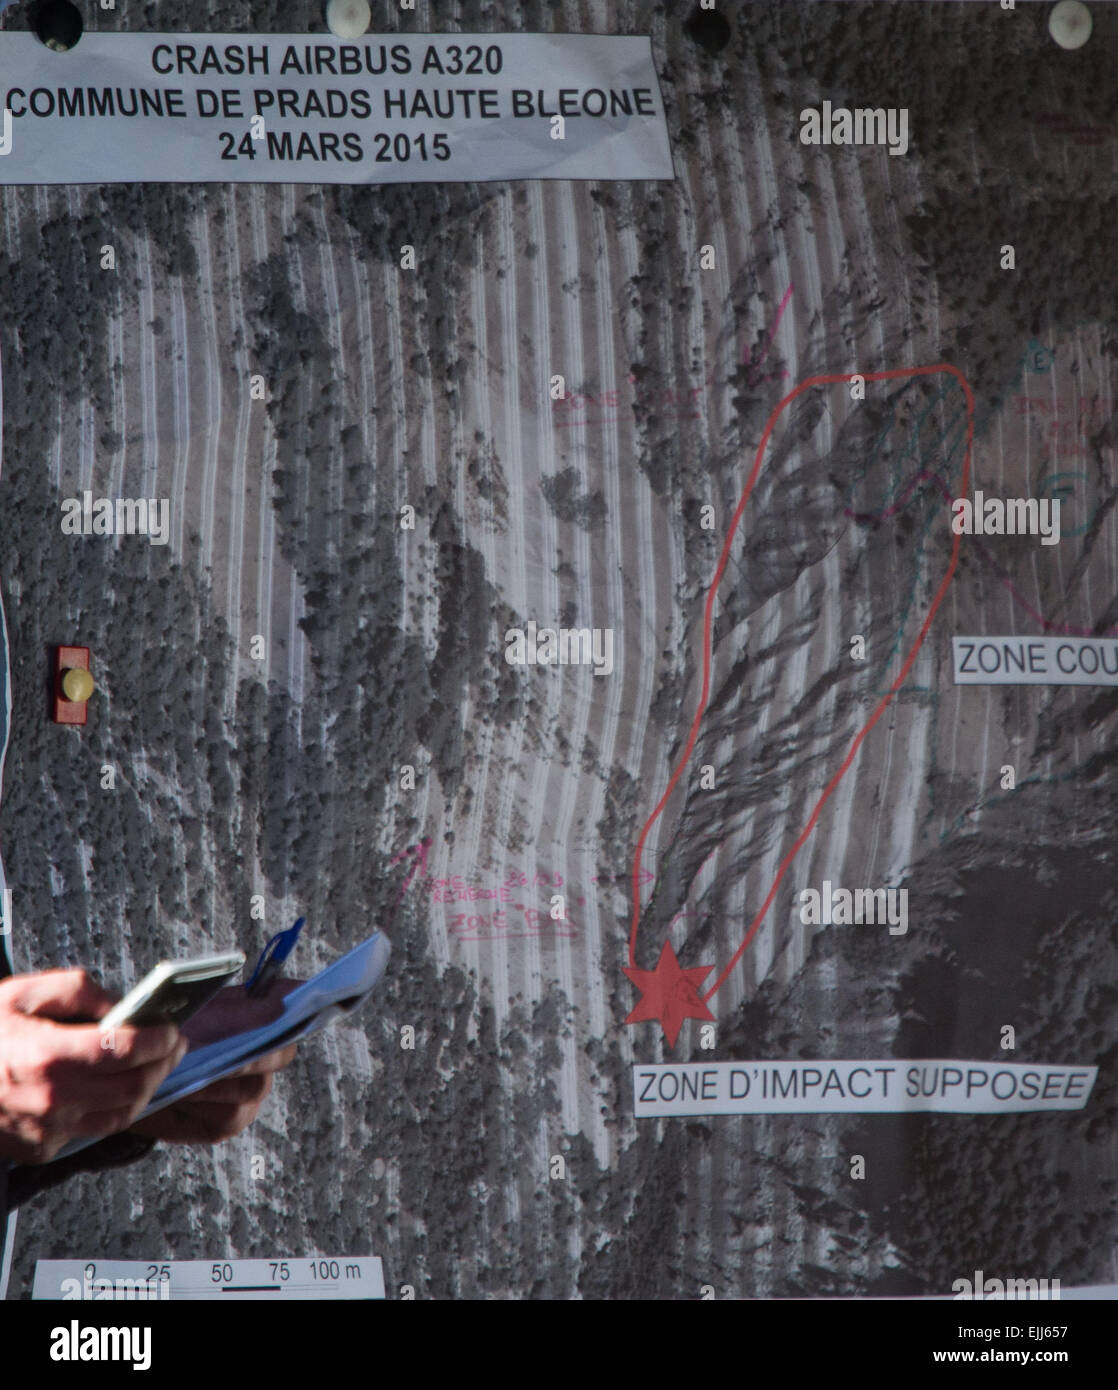 Una mappa con il crash area dell'A320 contrassegnata in rosso, fotografato a una polizia conferenza stampa in Seyne les Alpes, Francia, 27 marzo 2015. A Germanwings Airbus A320 si è schiantato nelle Alpi francesi il 24 marzo 2015. Foto: PETER KNEFFEL/dpa Foto Stock